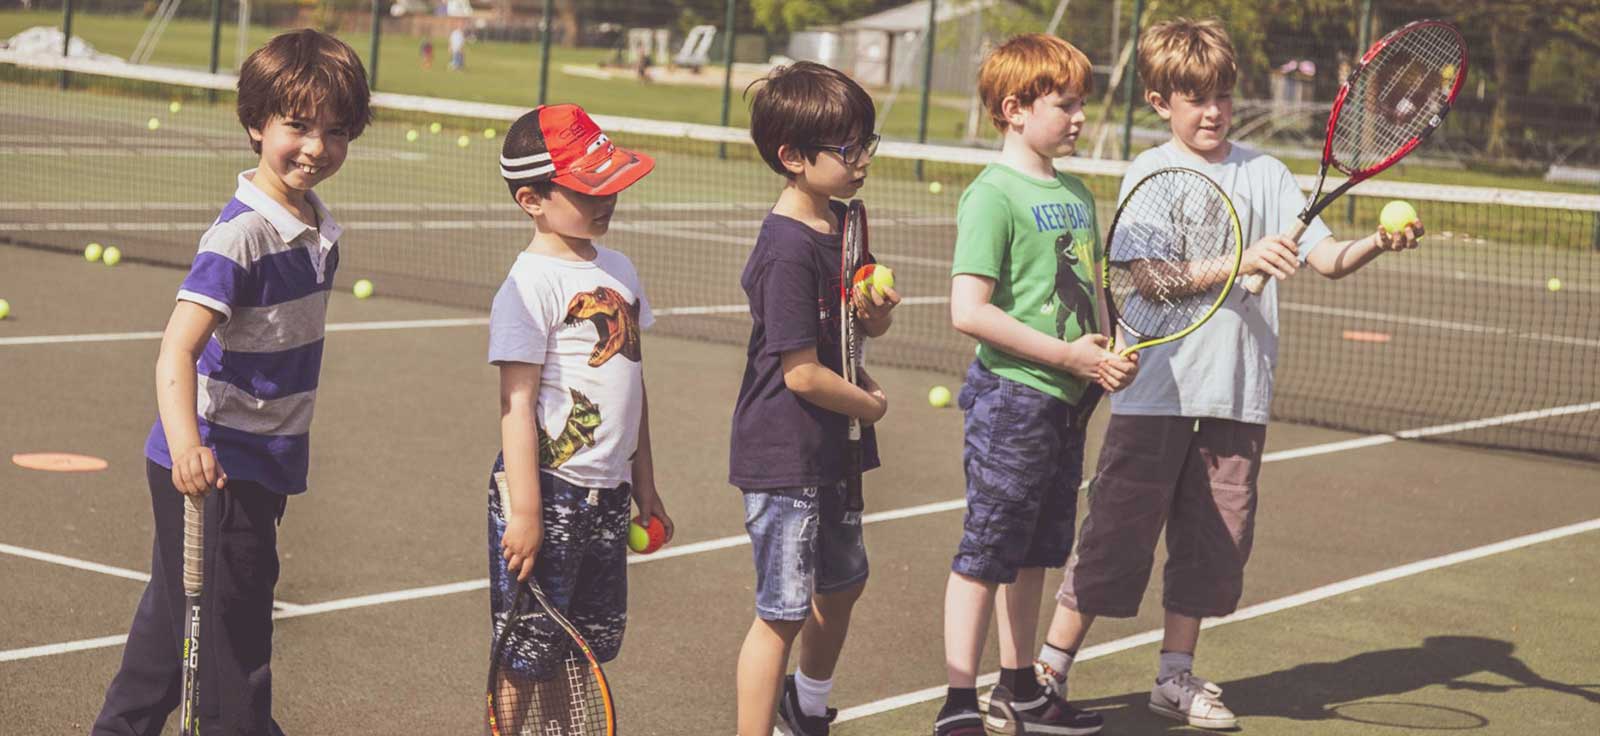 shkola tennisa dlya detey